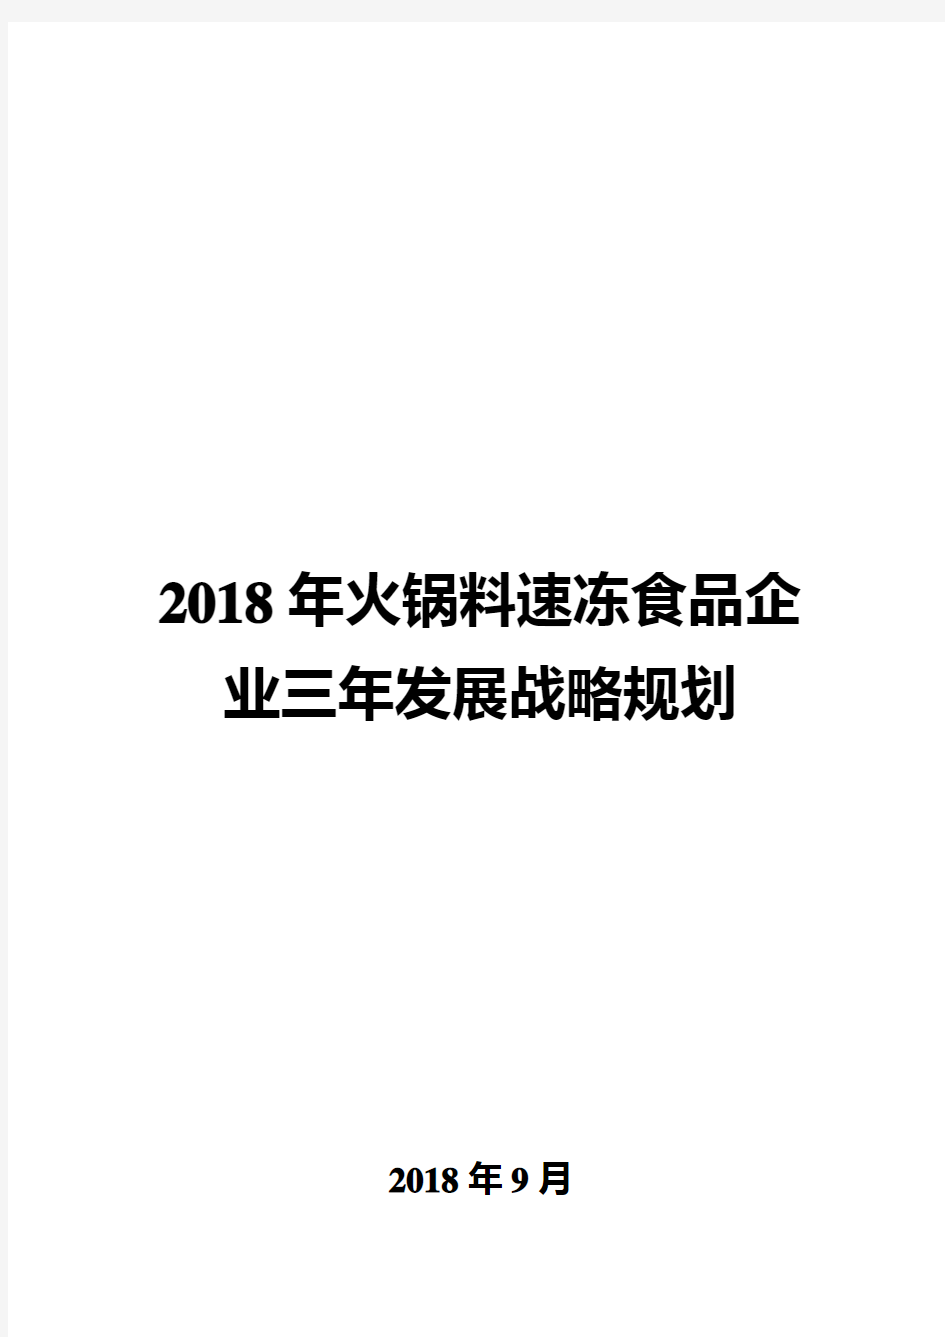 2018年火锅料速冻食品企业三年发展战略规划